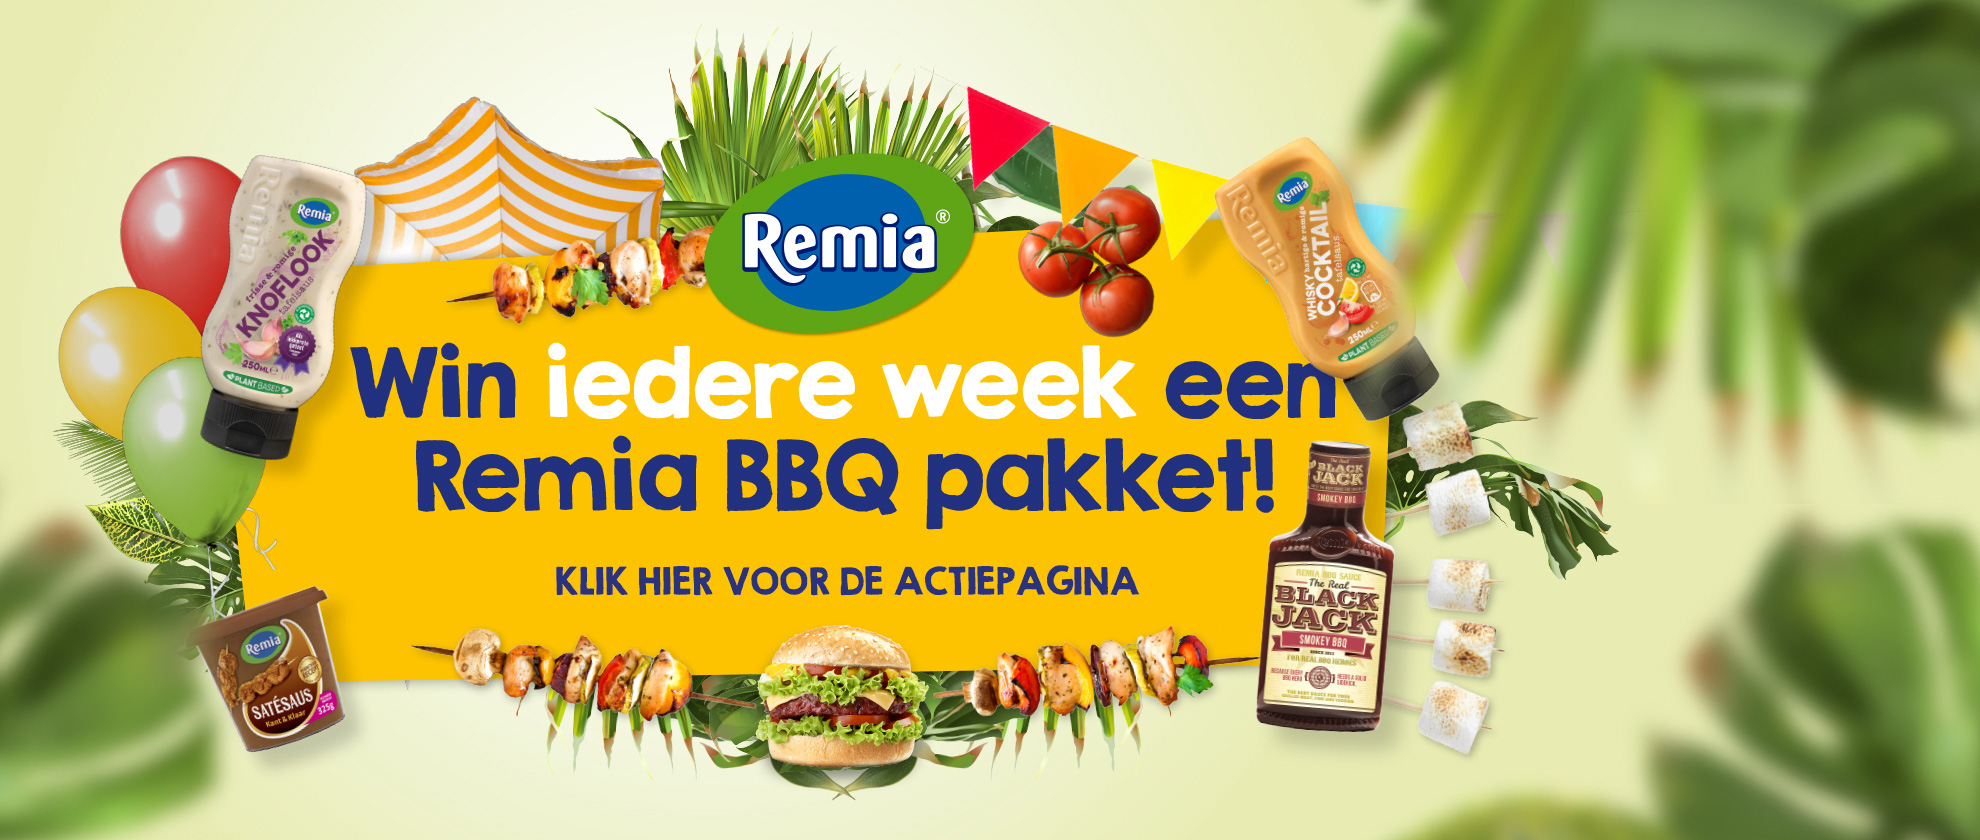 Win iedere week een Remia BBQ pakket!